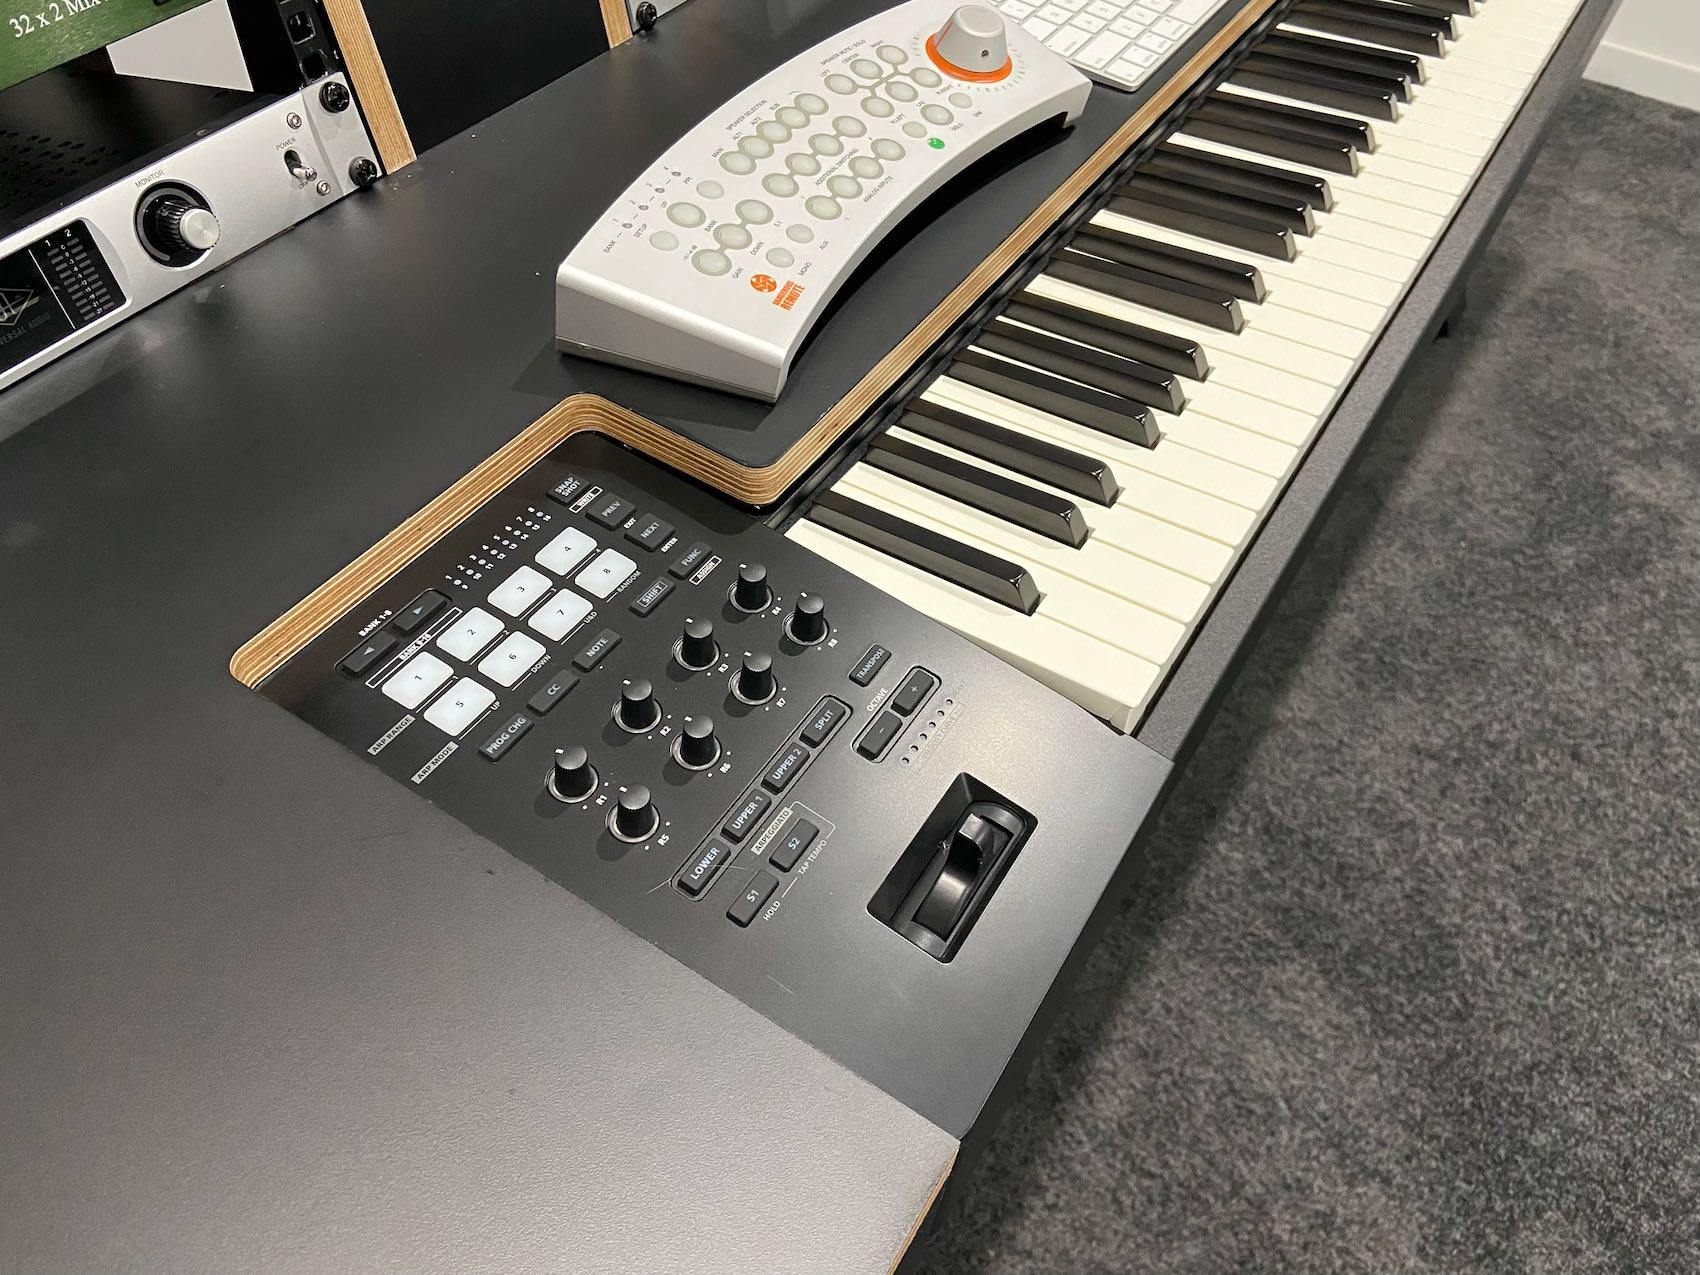 Collection: Studio Desks For Keyboards